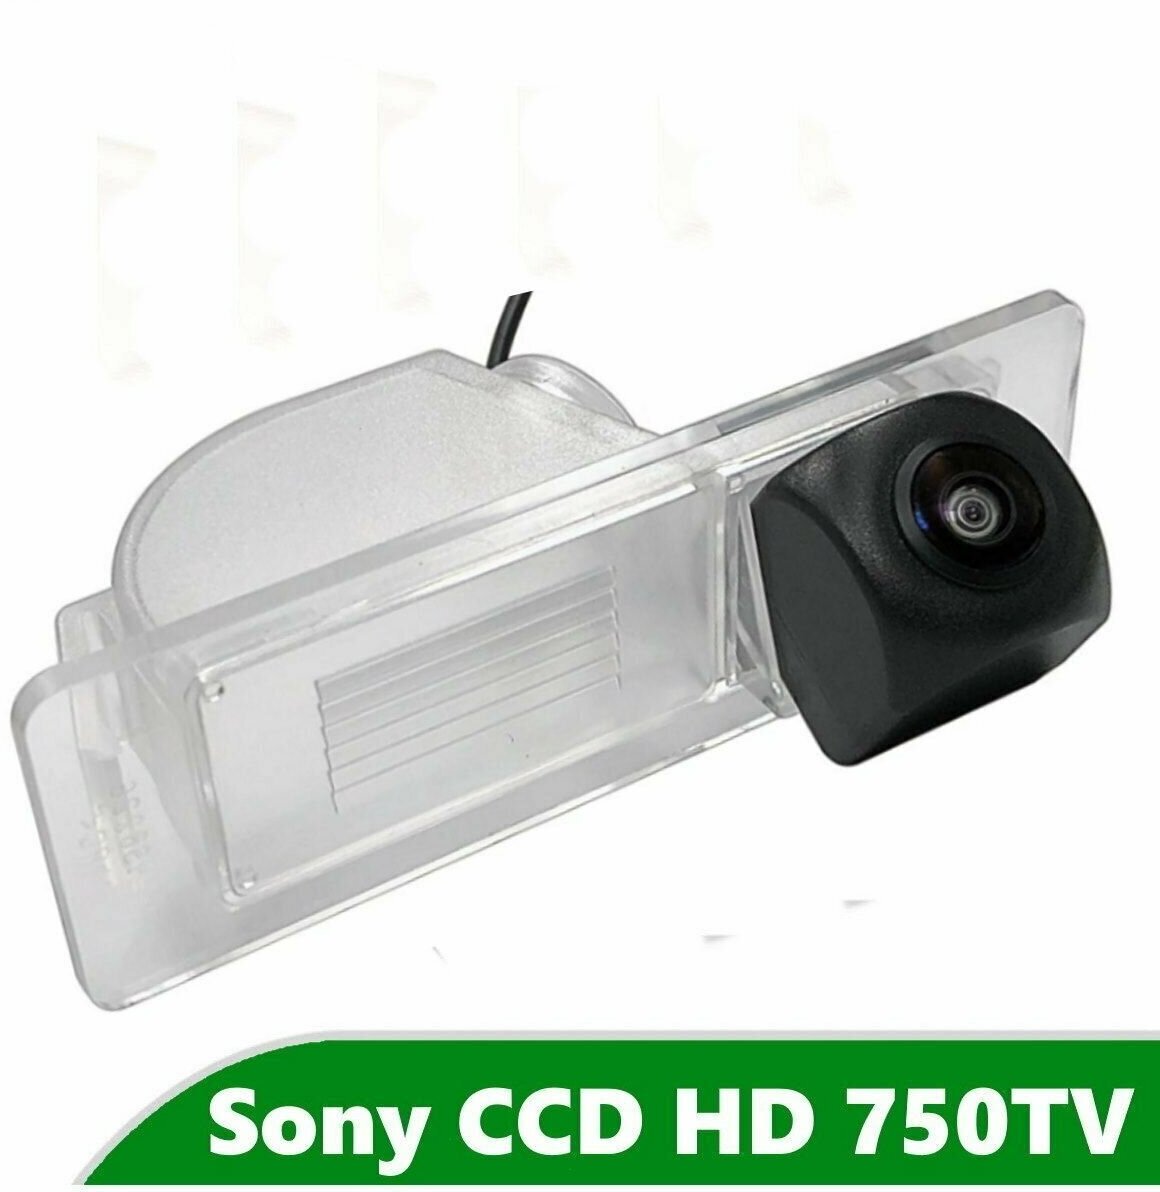 Камера заднего вида CCD HD для Skoda Rapid (Чешская сборка)